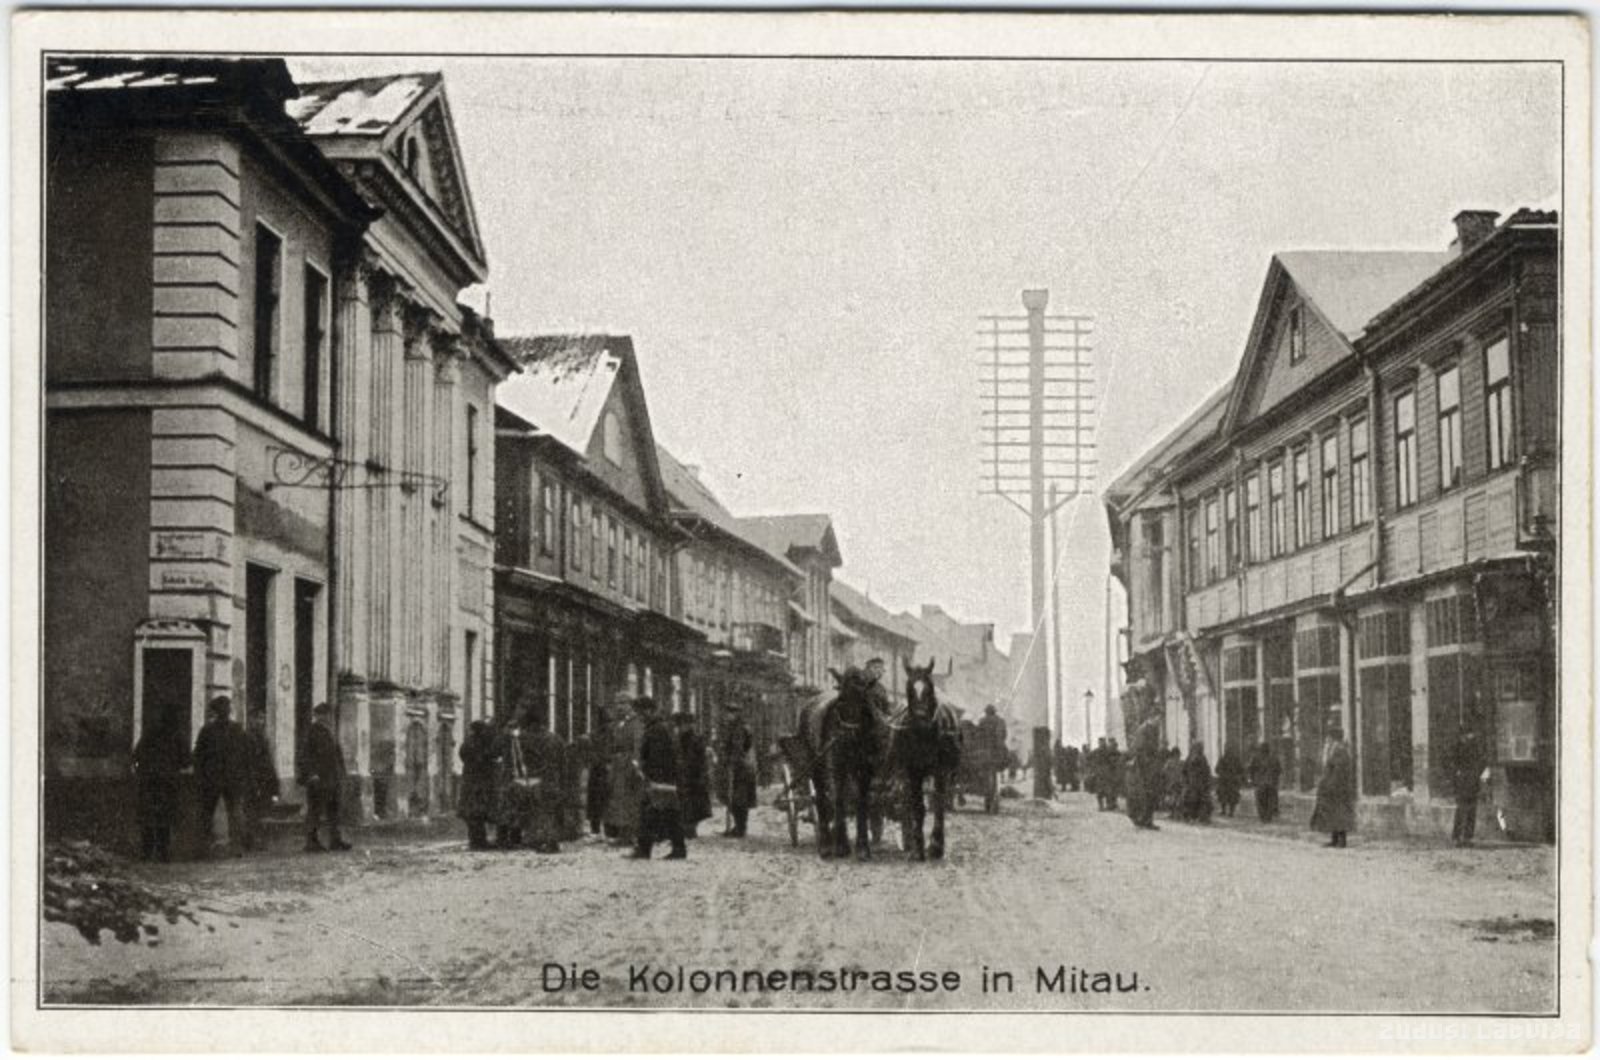 Jelgava. Colonādes Street, Die Colonnenstrasse in Mitau